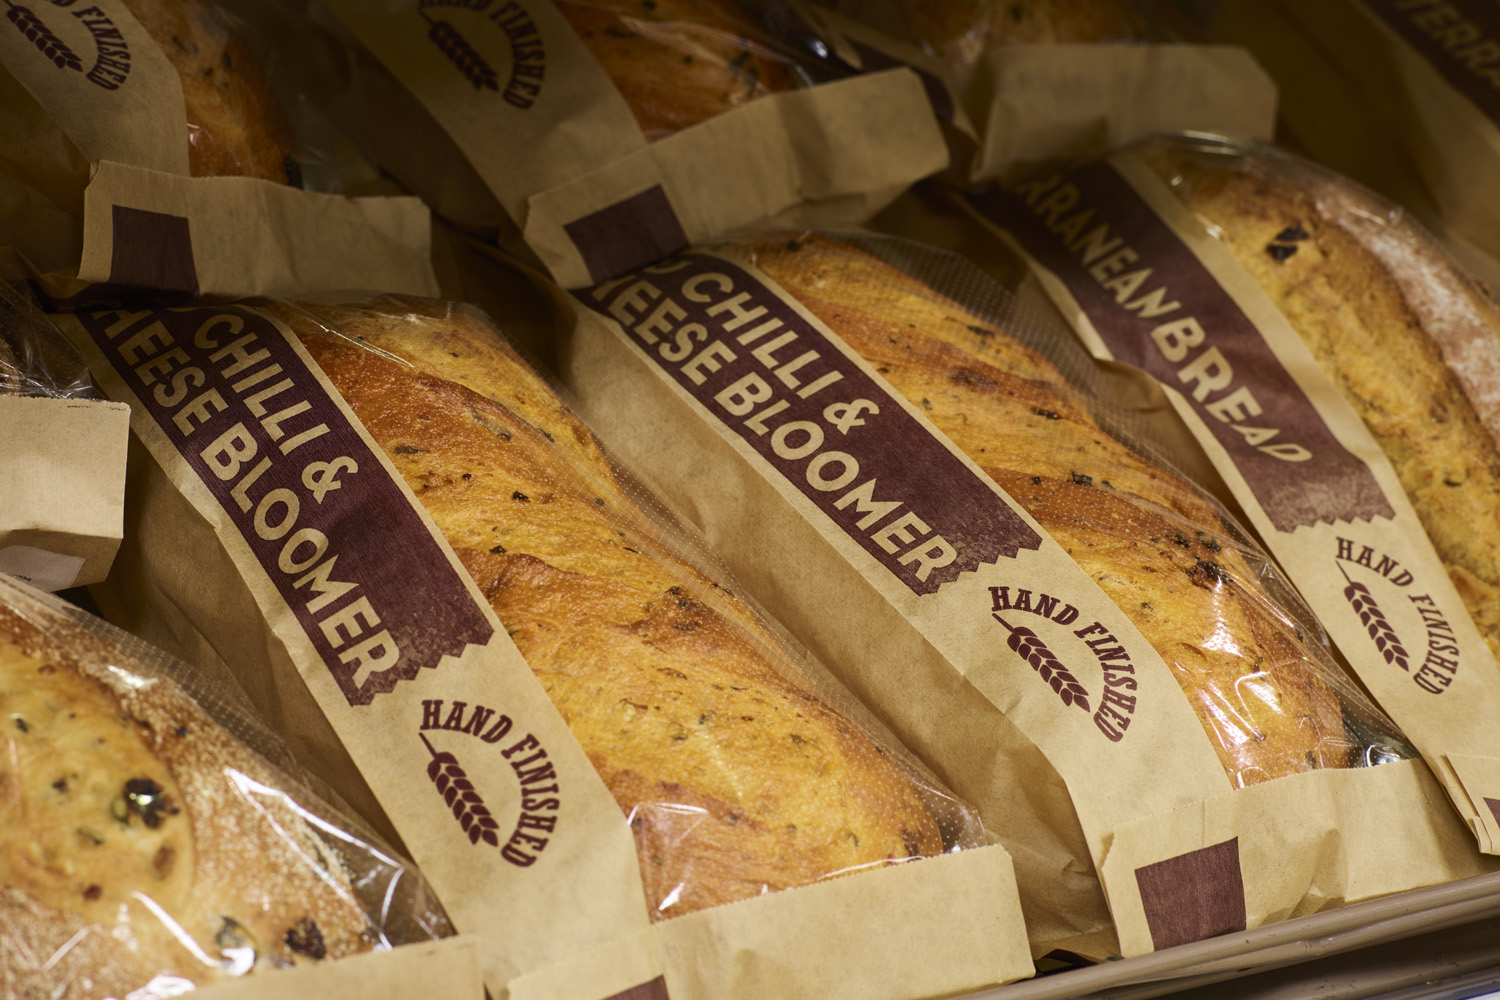 Упаковка для хлеба и хлебобулочных изделий